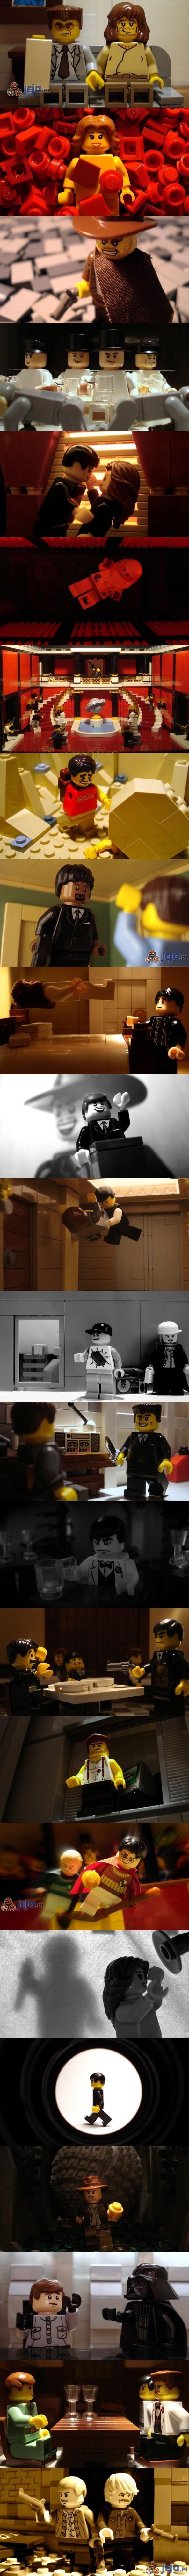 Filmowe sceny z Lego